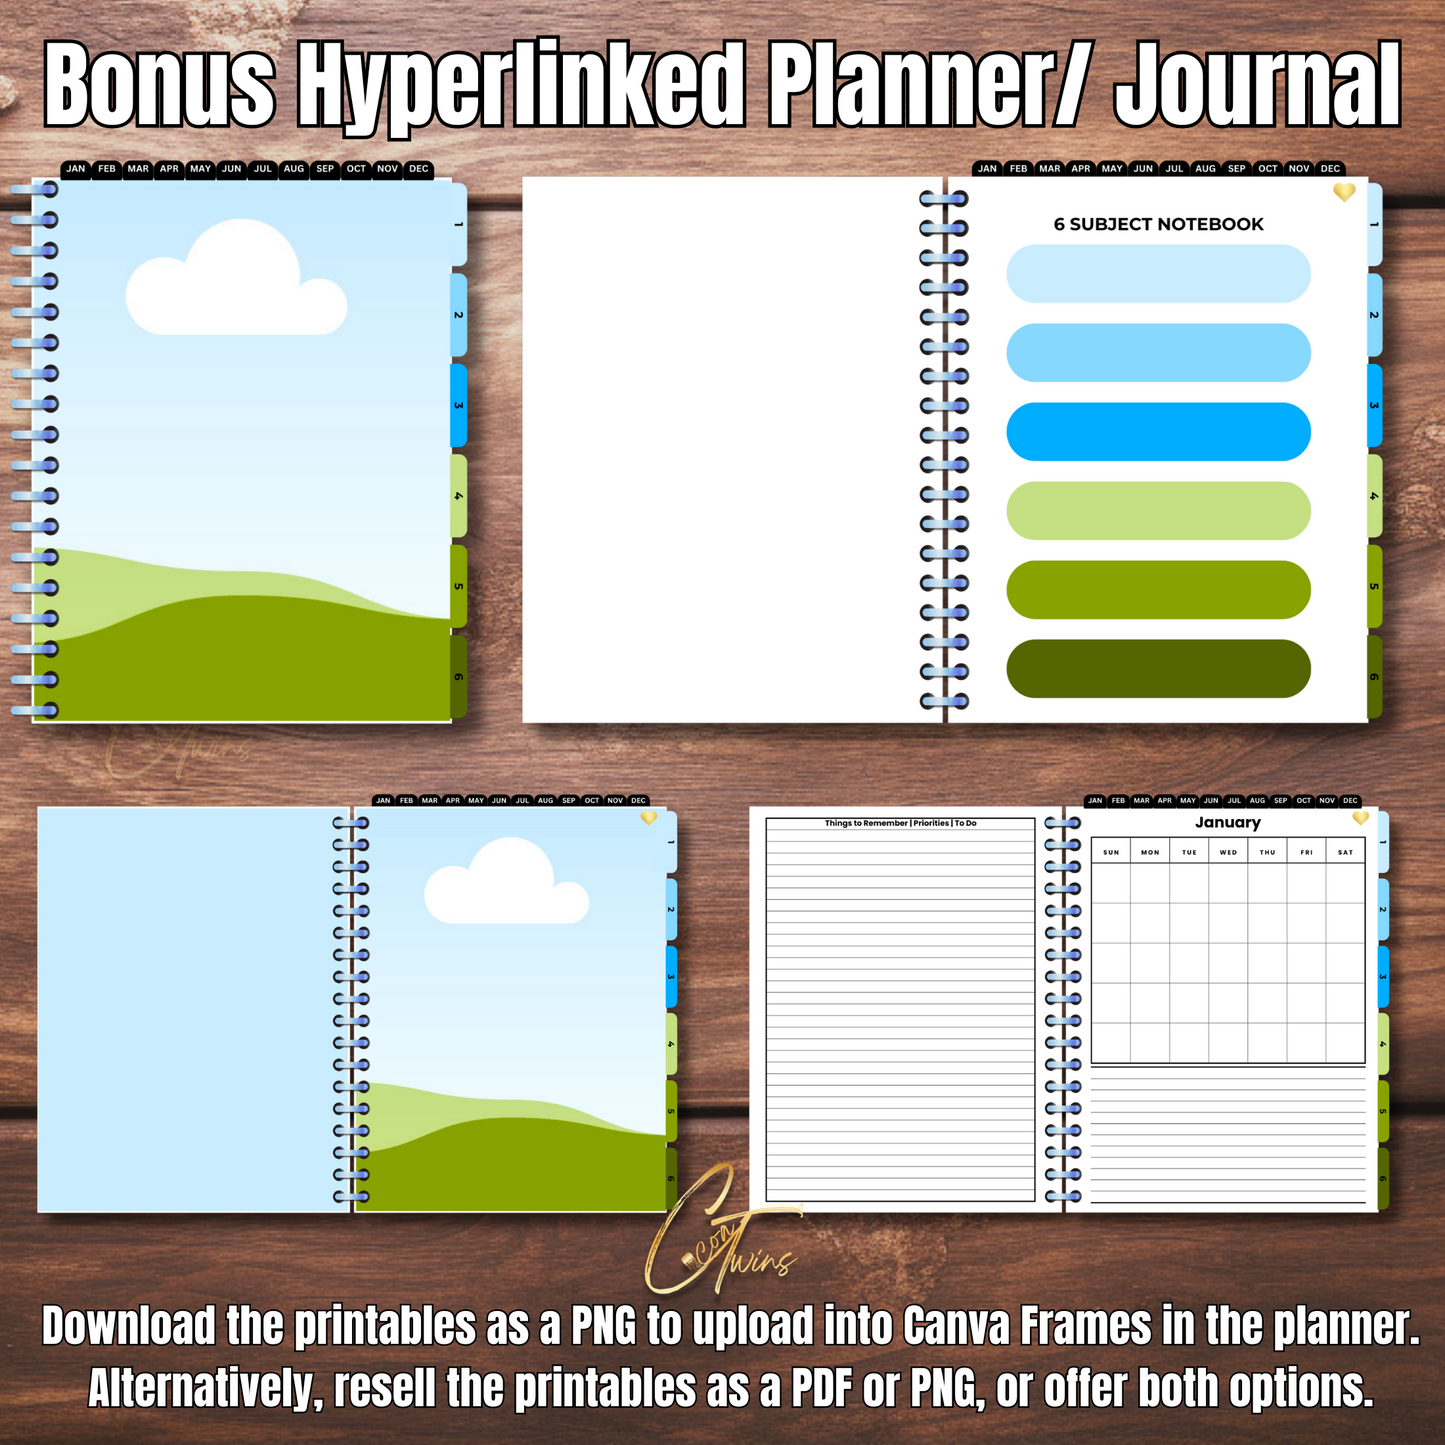 Boss | Editable Journal PLR Kit with a Bonus Hyperlinked Planner | Fully Editable Canva Templates